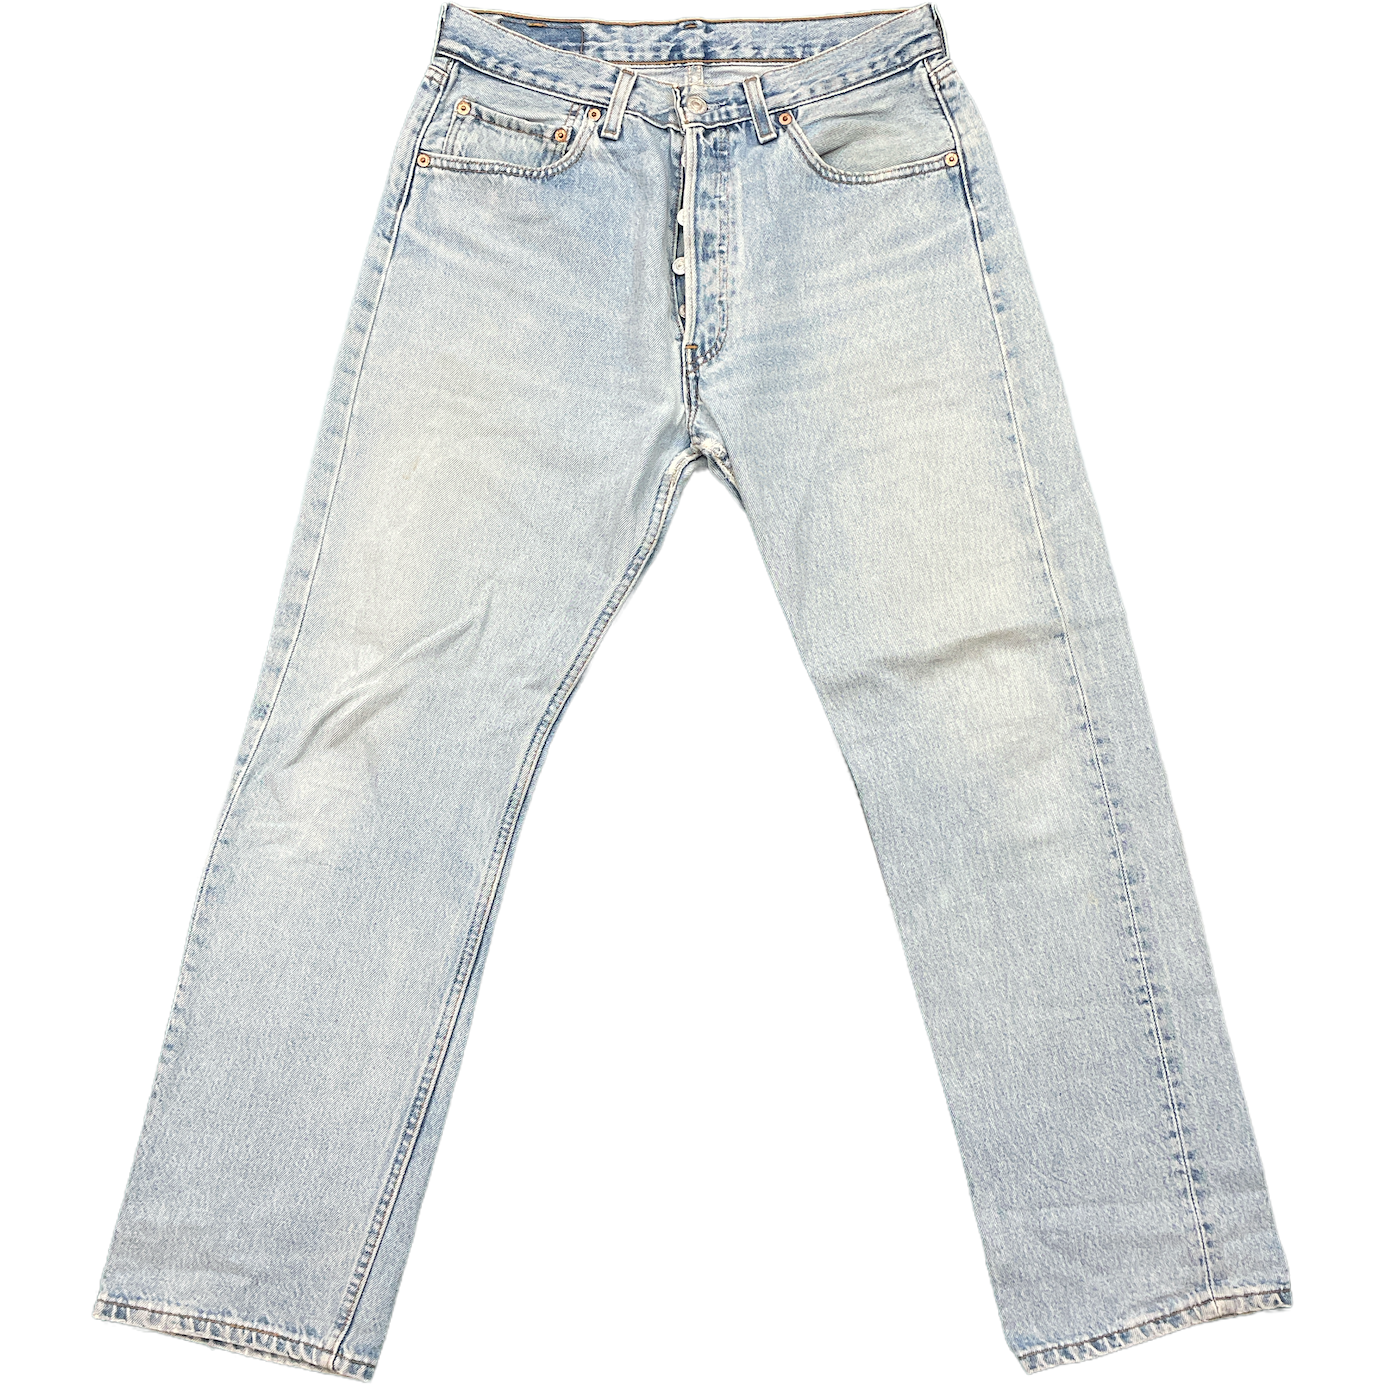 Vintage Mens Levis Jeans - Waist 32" Length 30"